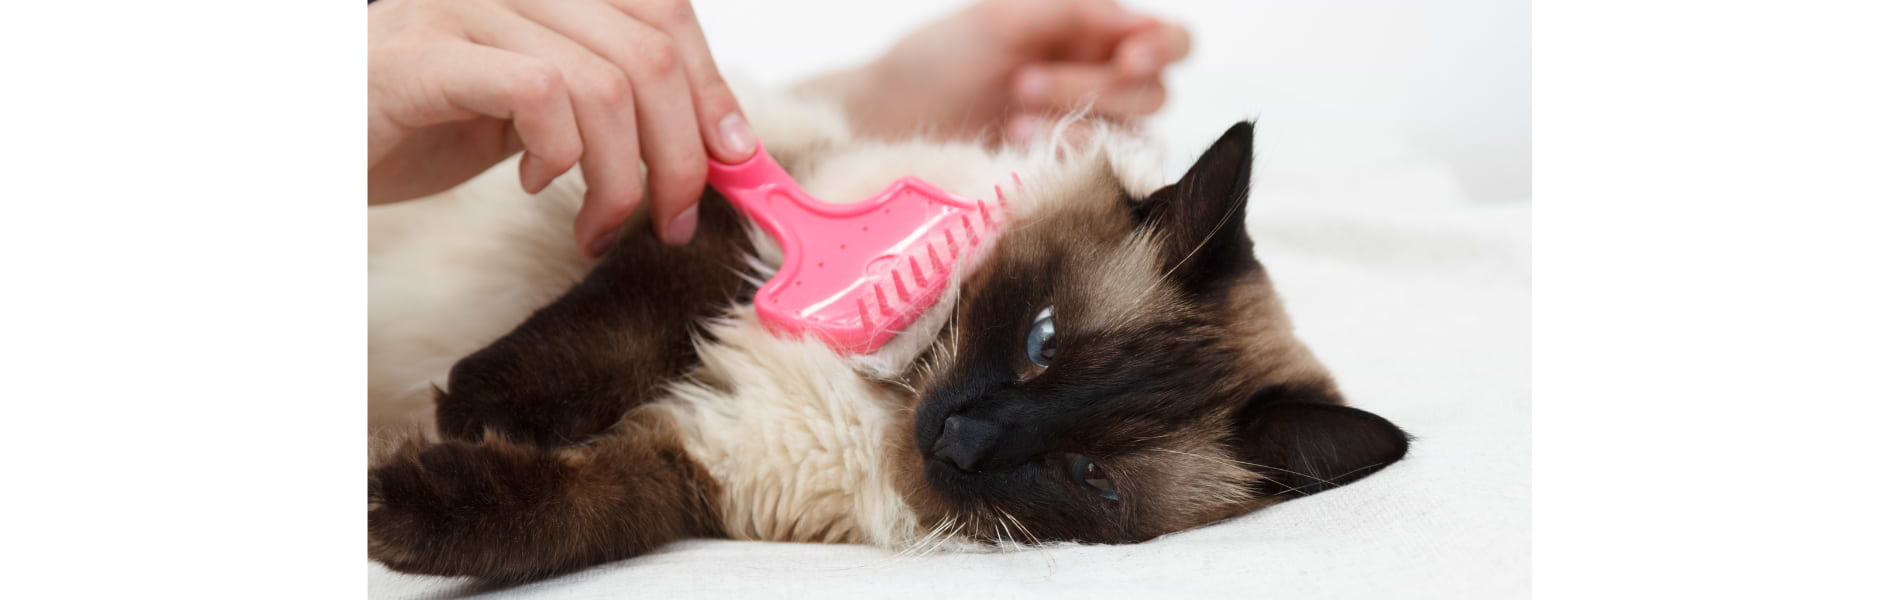 איך מטפלים בכדורי שיער בחתולים בקלות ובאופן טבעי